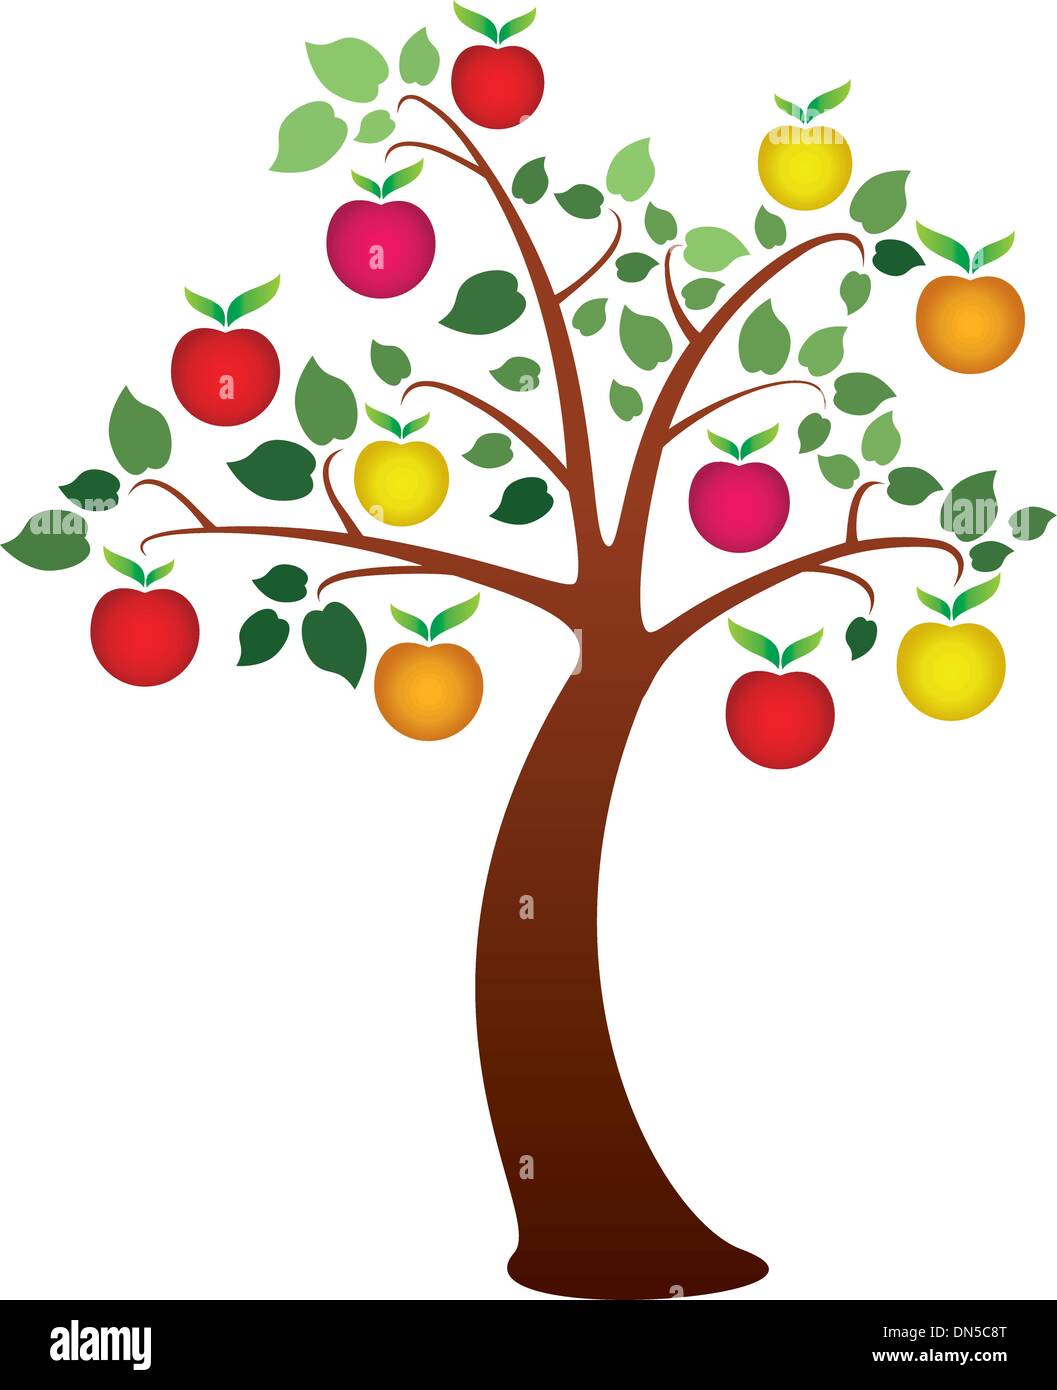 Яблоня дерево символ. Яблоки на дереве. Дерево с разноцветными яблоками. Дерево с красными и зелеными яблоками. Дерево с золотыми яблоками.